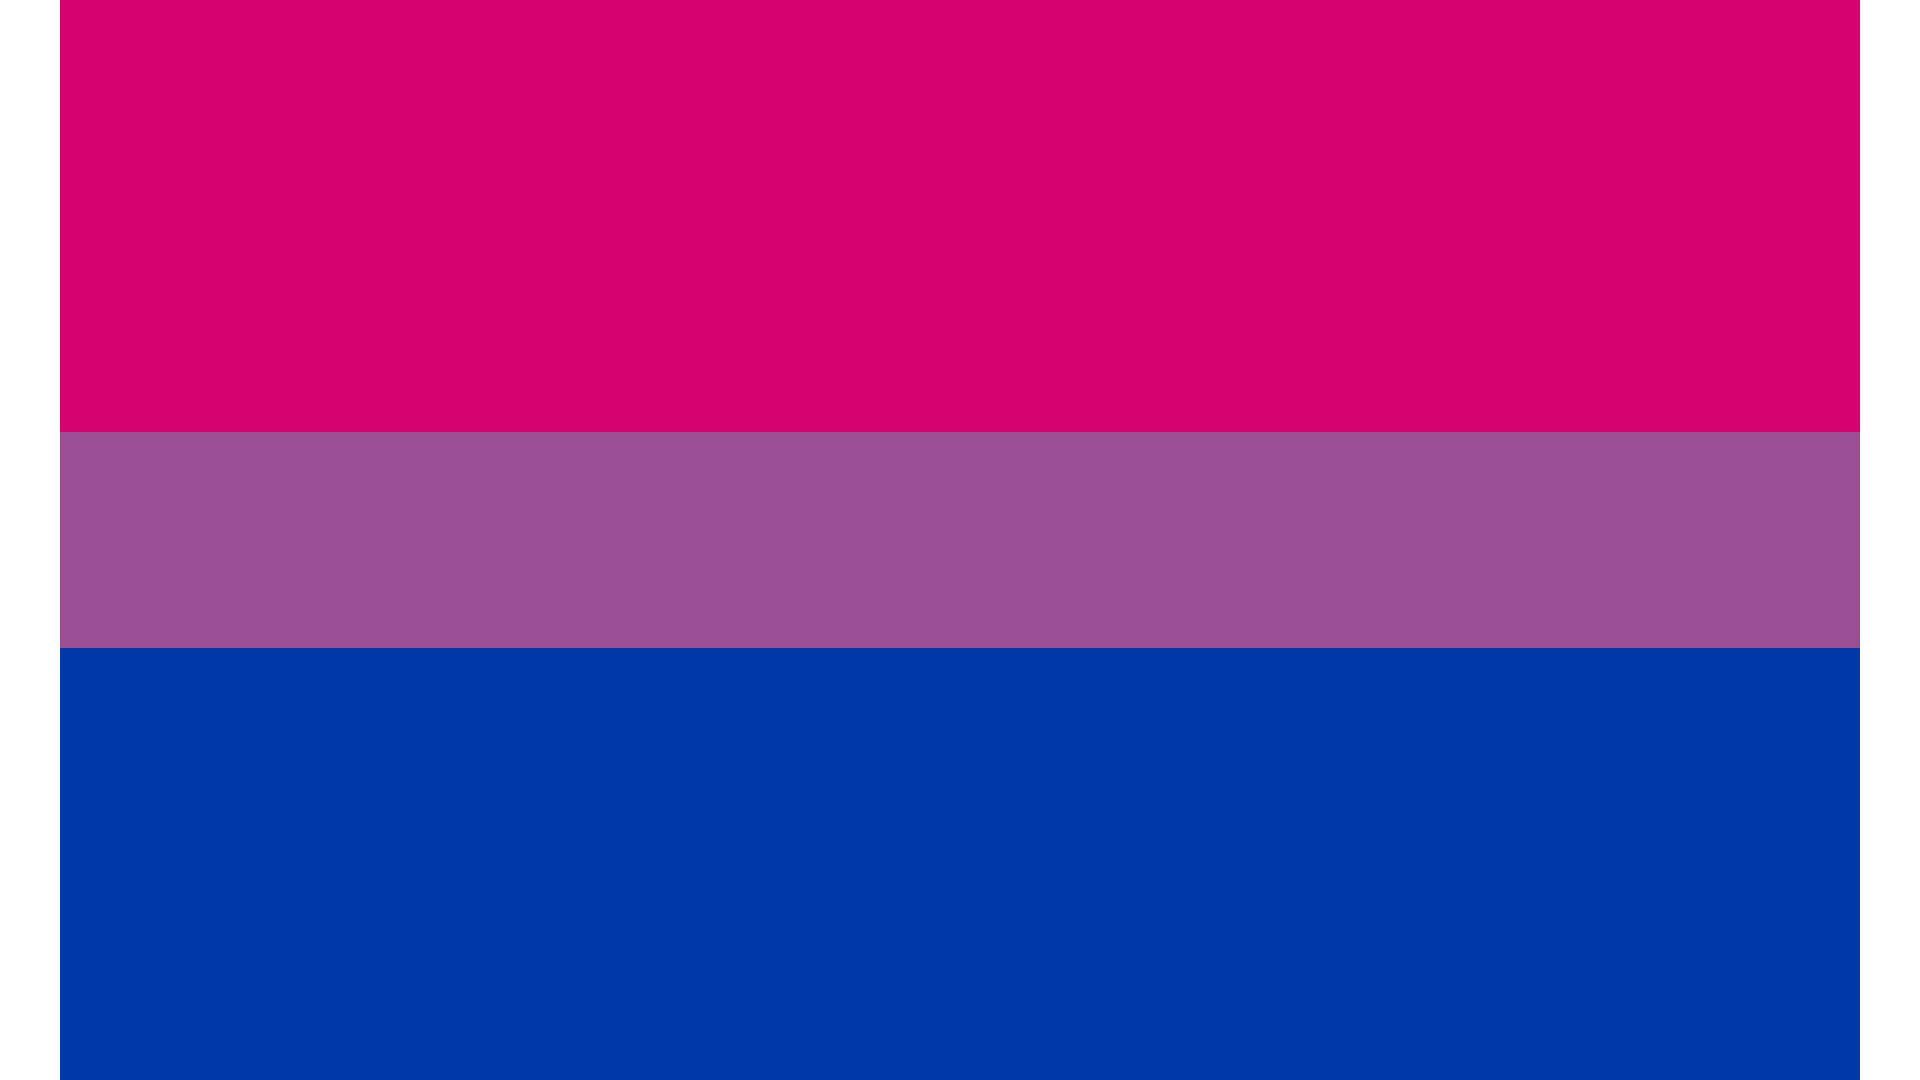 bi pride wallpaper, blue, violet, pink, purple, red, magenta, lilac, electric blue, cobalt blue, azure